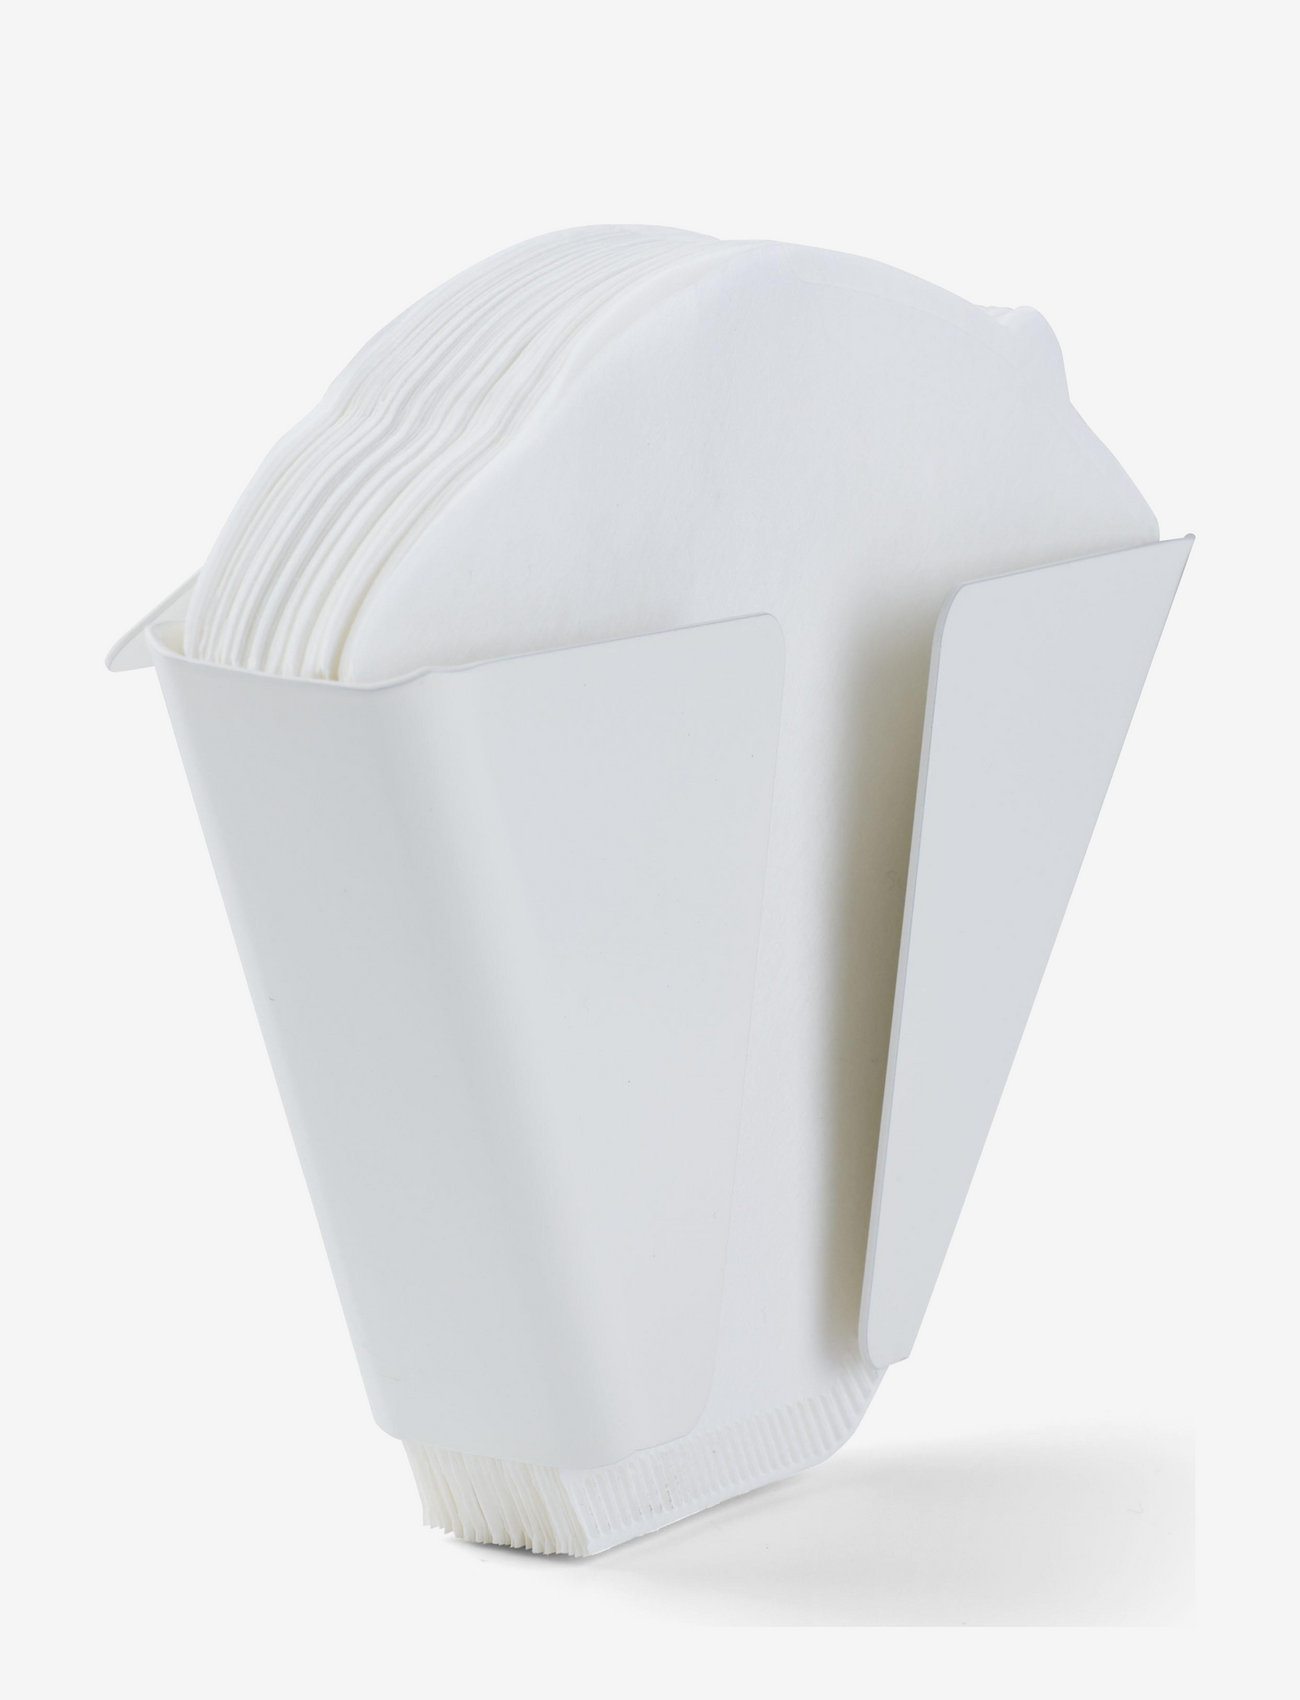 Gejst - Flex coffee filter holder - madalaimad hinnad - white - 1